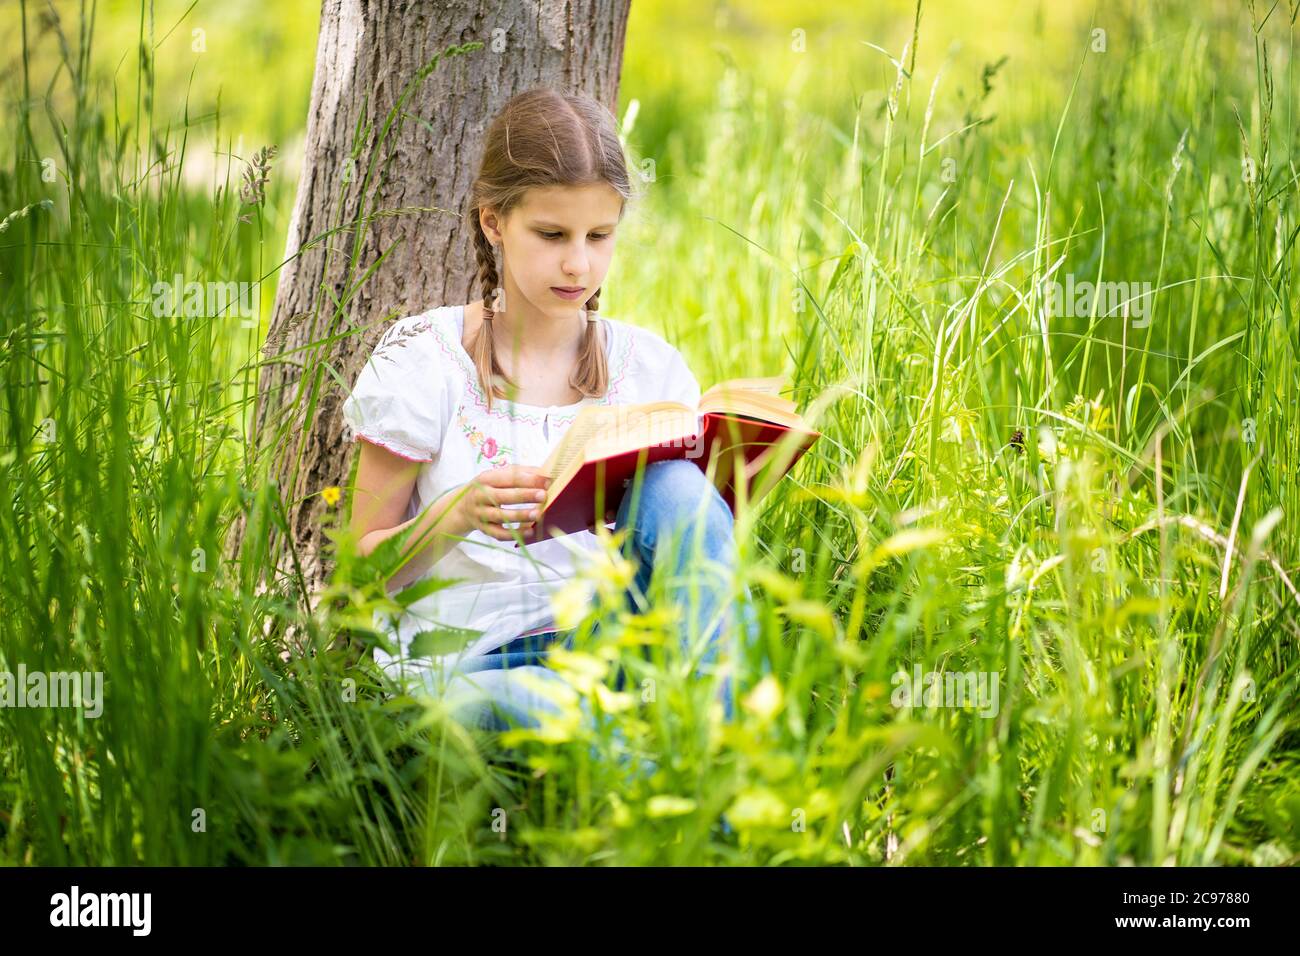 Junges Mädchen in weißem T-Shirt auf dem Gras am Baum im Wald sitzen und Buch lesen. Tolle Idee und Aktivität, um Sommerurlaub zu verbringen. Stockfoto